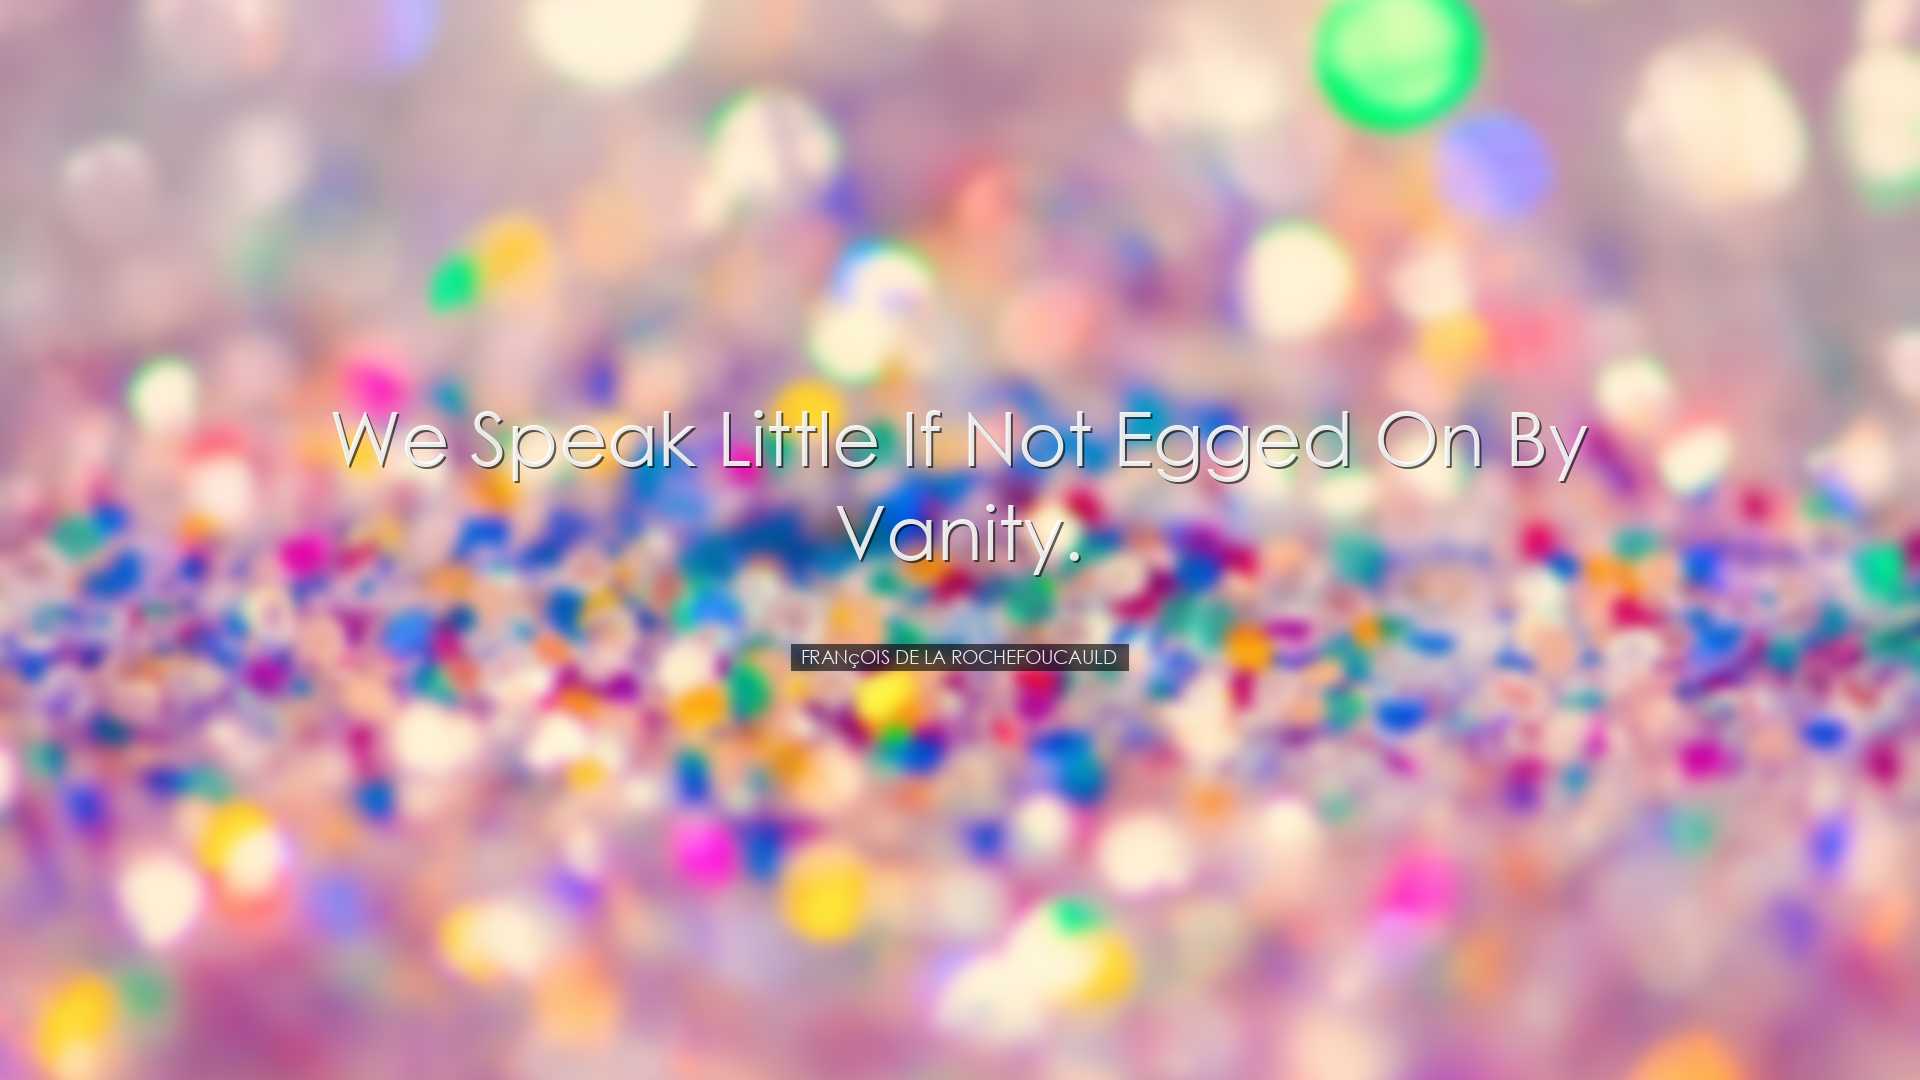 We speak little if not egged on by vanity. - FranÃ§ois de la Roc